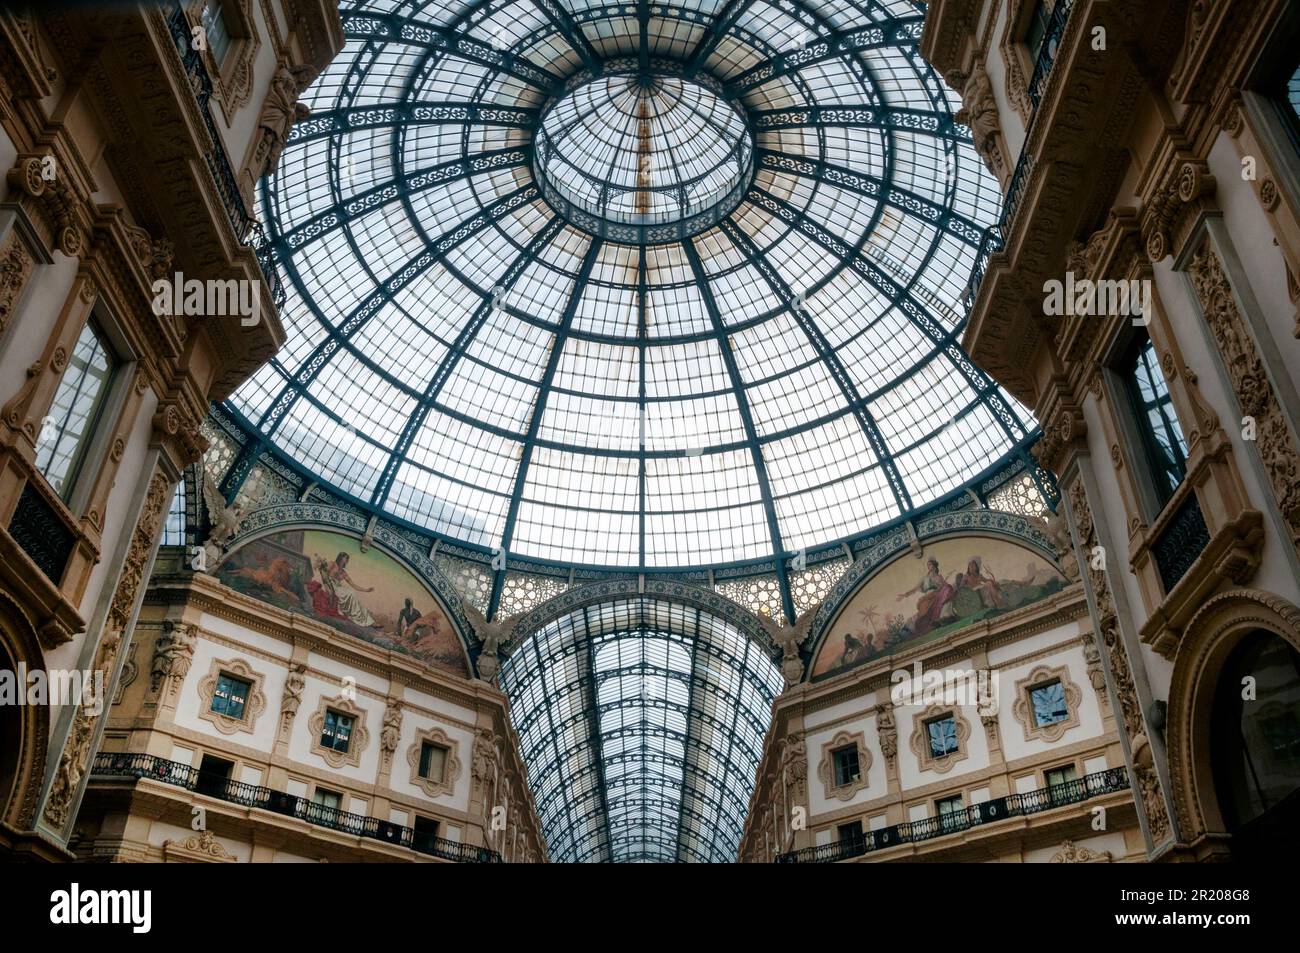 Lunette Africa und Lunette America, Decke aus Eisen und Glas und Kuppel der Galleria Vittorio Emanuele II in Mailand, Italien. Stockfoto